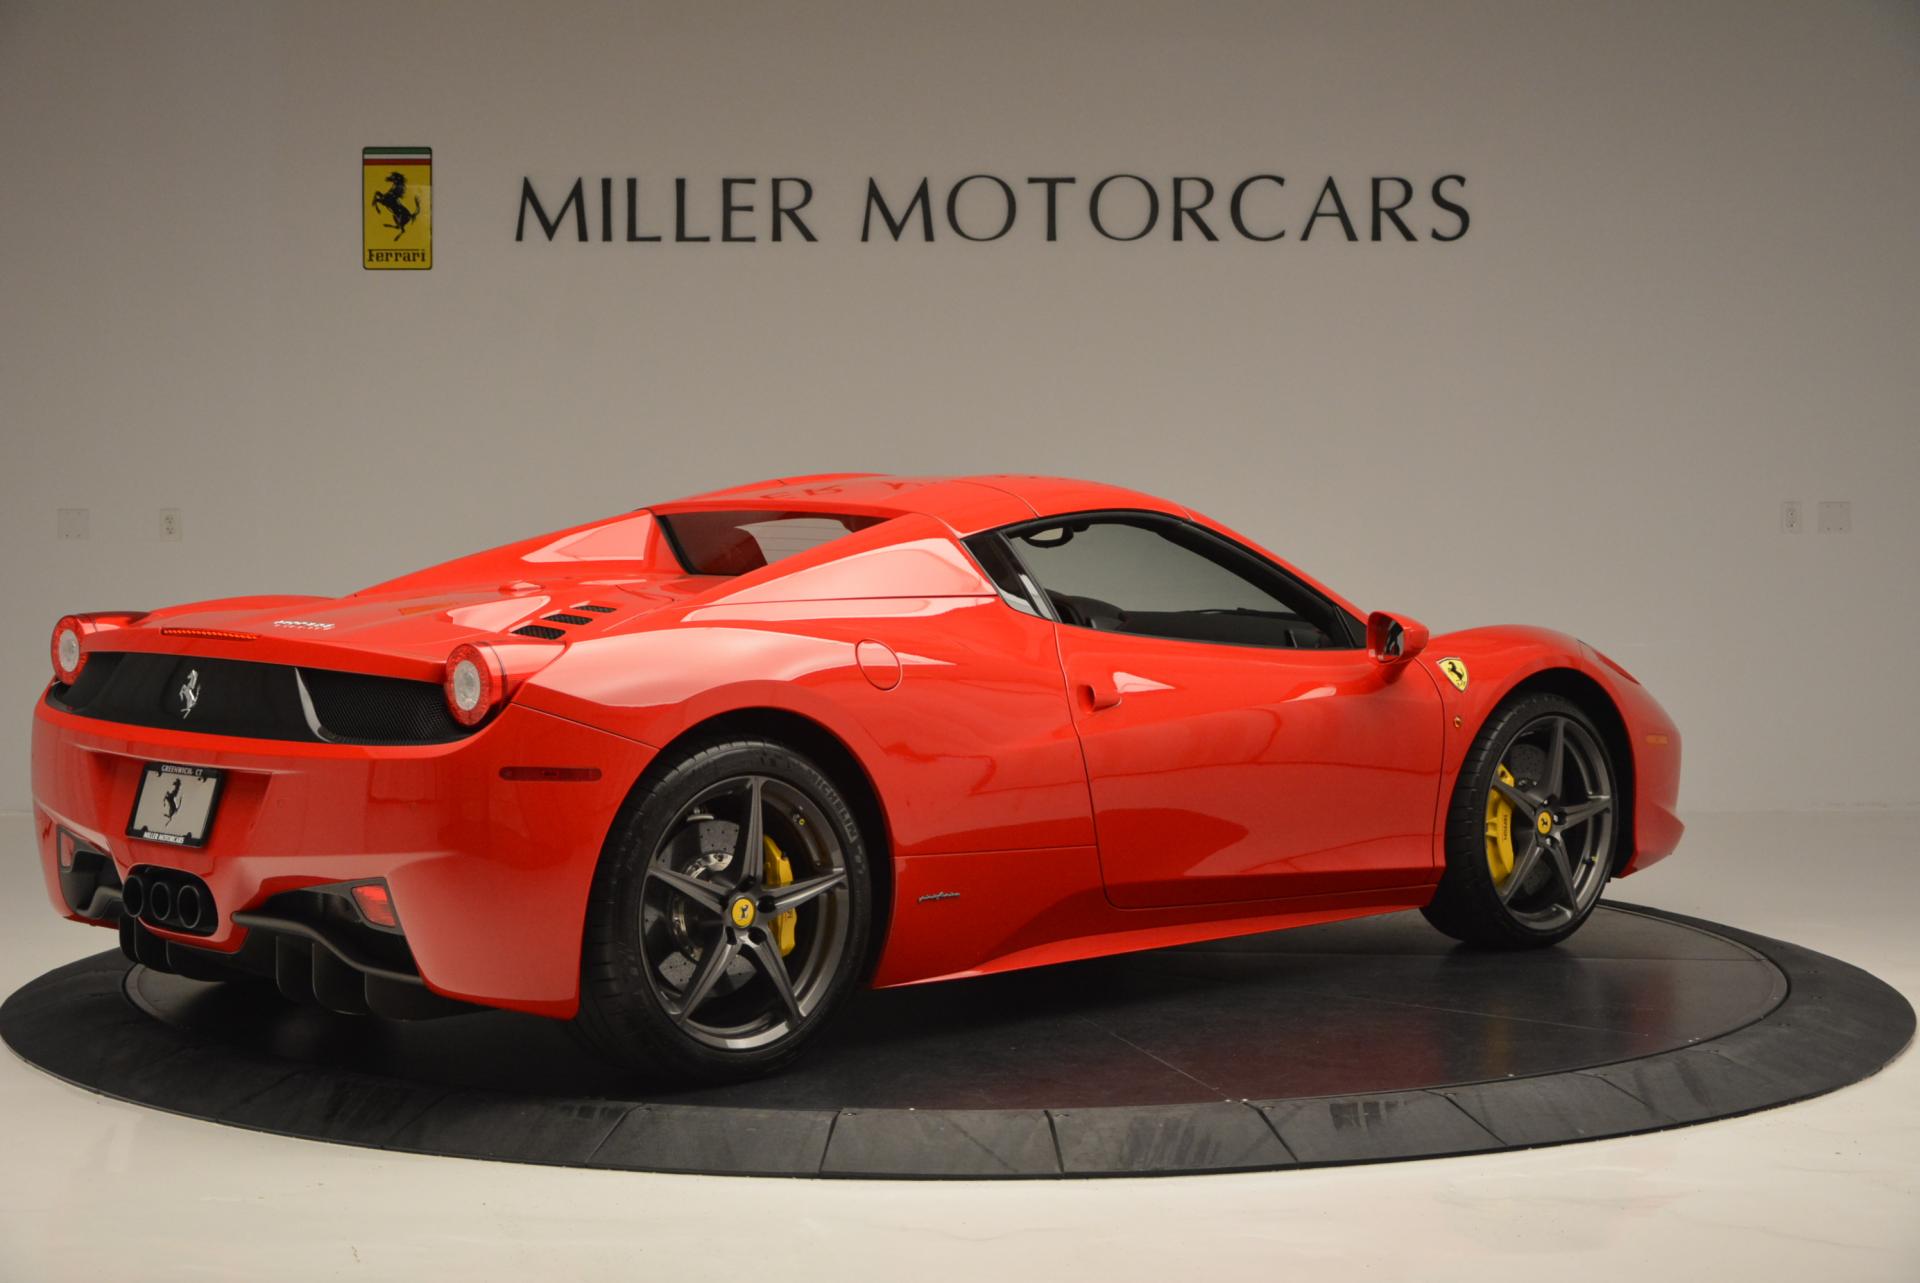 Pre Owned 2015 Ferrari 458 Spider For Sale Miller Motorcars Stock 4335